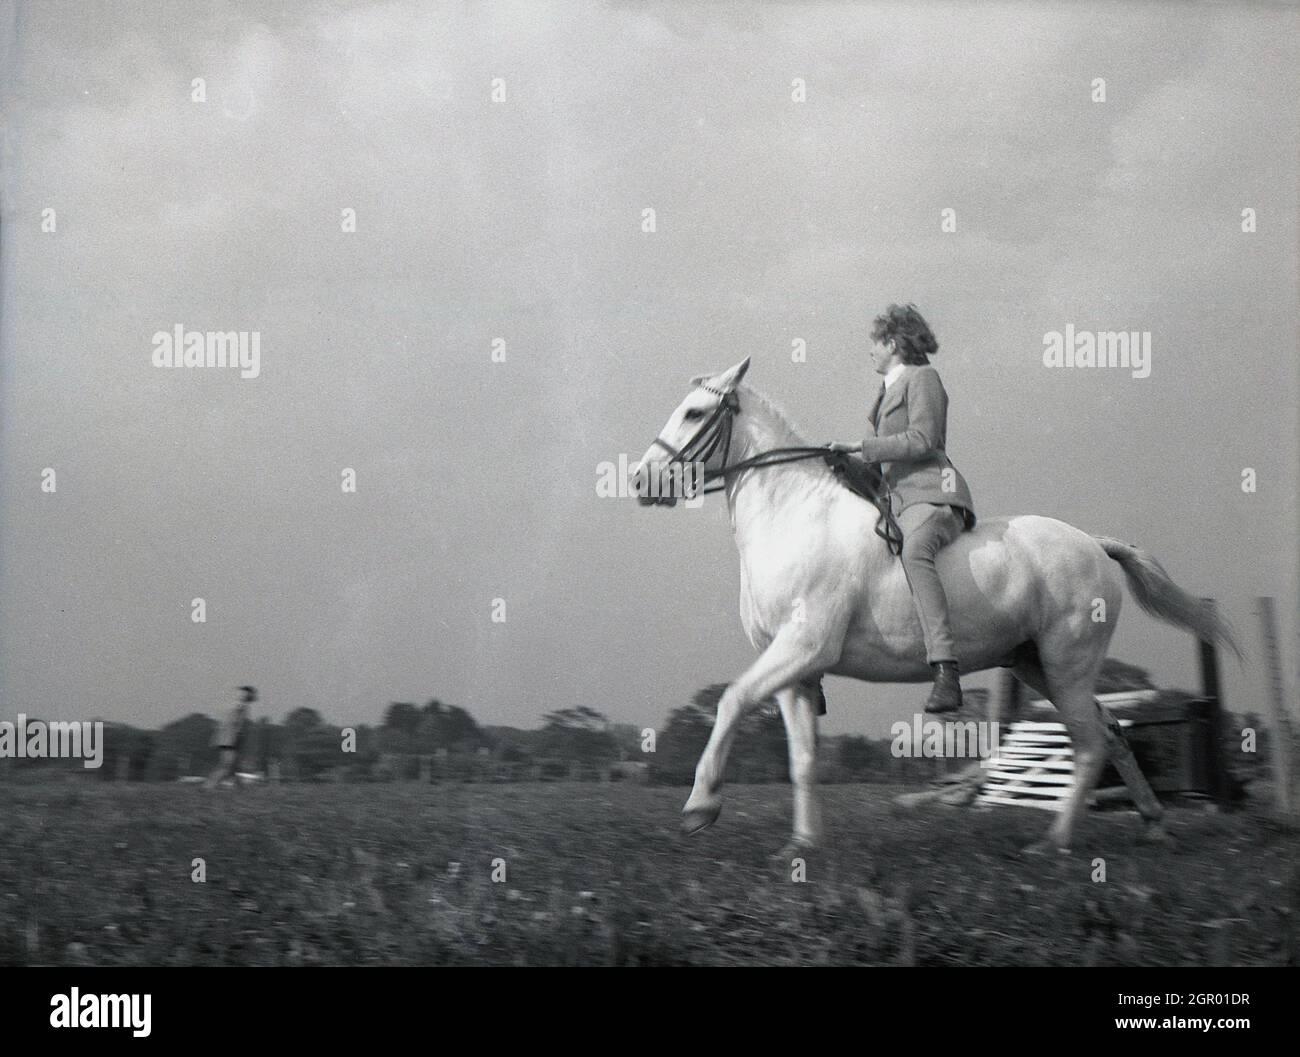 1950, historisch, draußen auf einem Feld, eine Reiterin auf ihrem Pferd, die an einem Wettkampfwettbewerb teilnimmt, Sussex, England, Großbritannien. Stockfoto